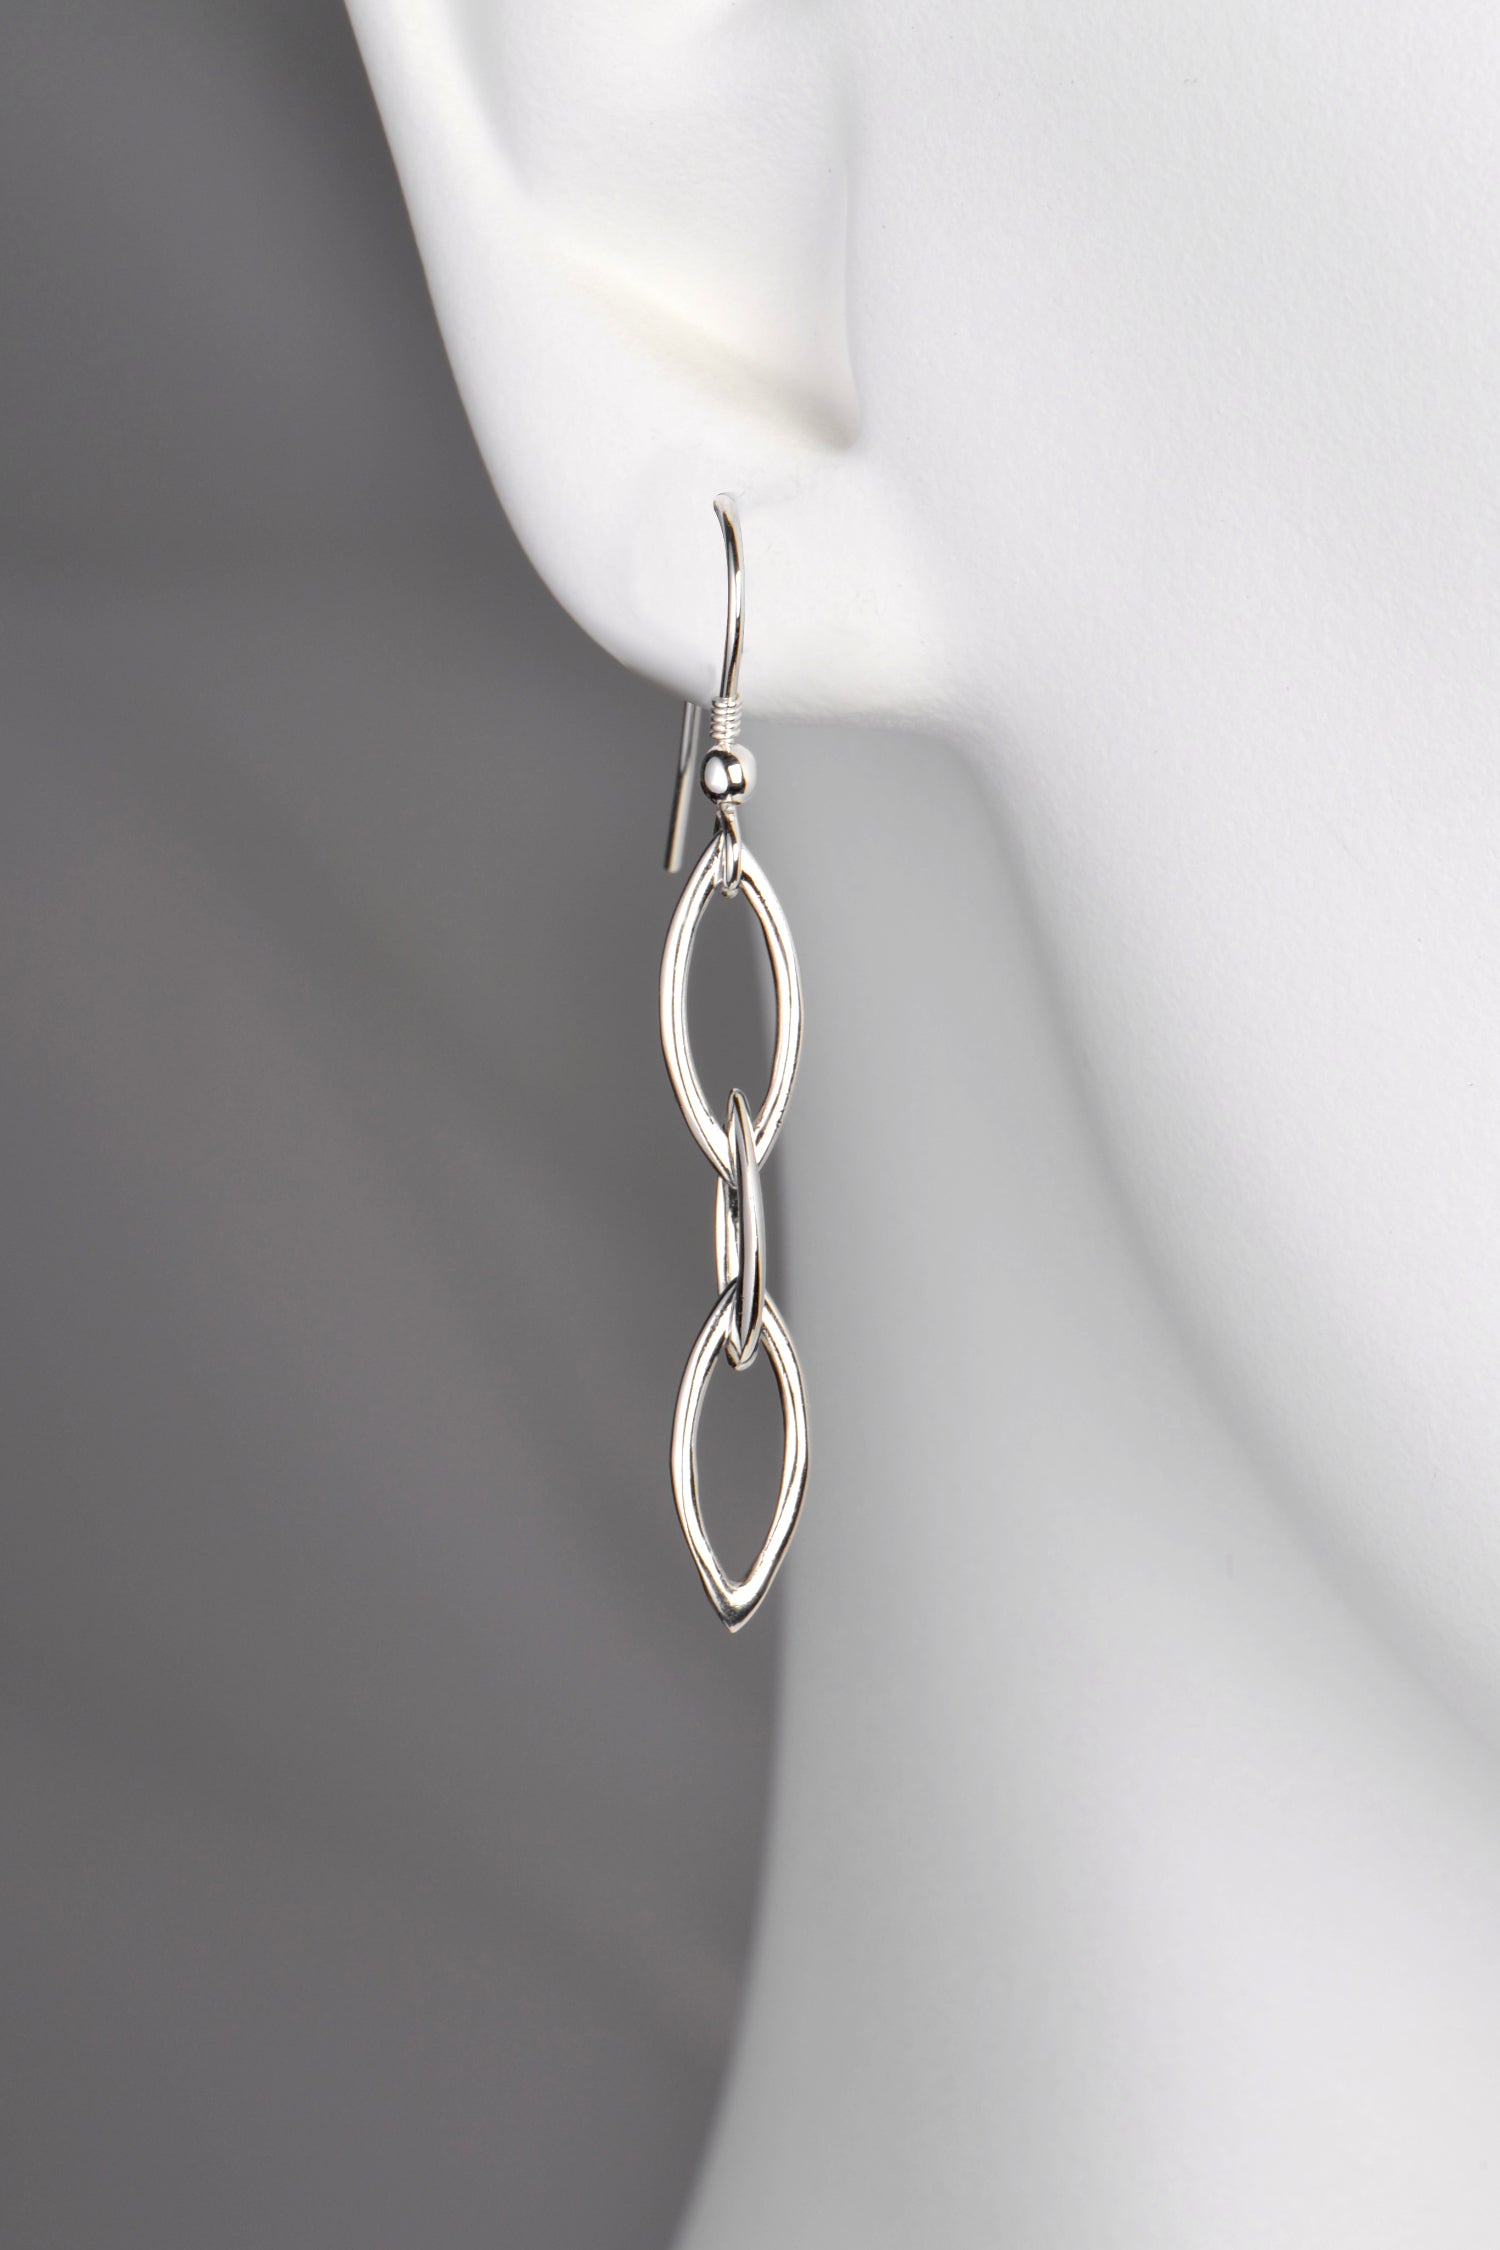 almond shaped interlocked link drop earring in sterling silver